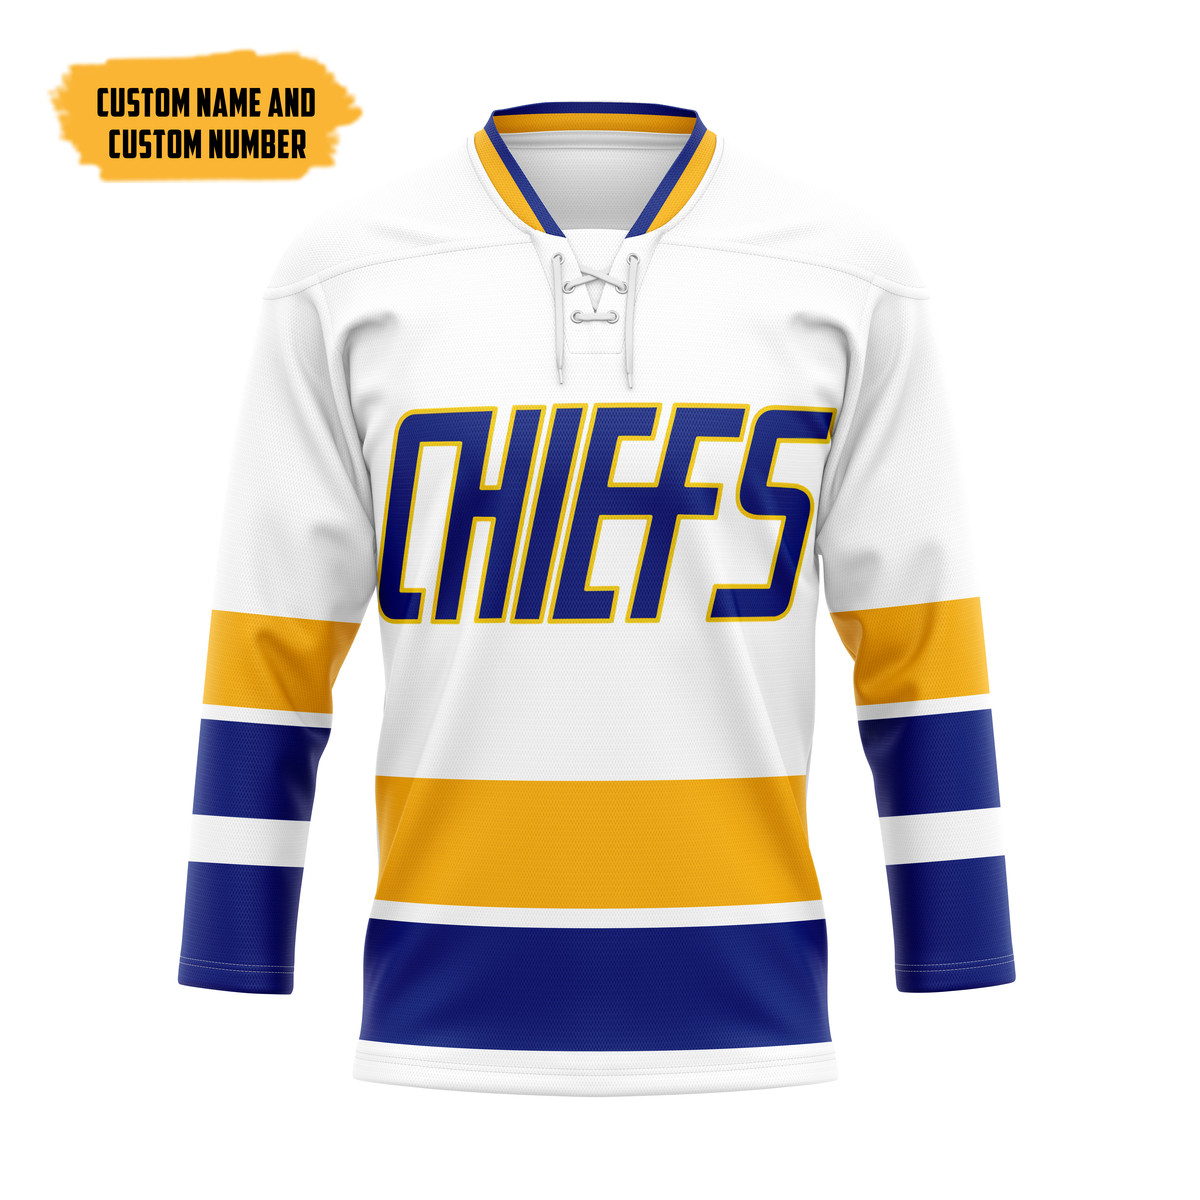 The Best Hockey Jersey Shirt 195